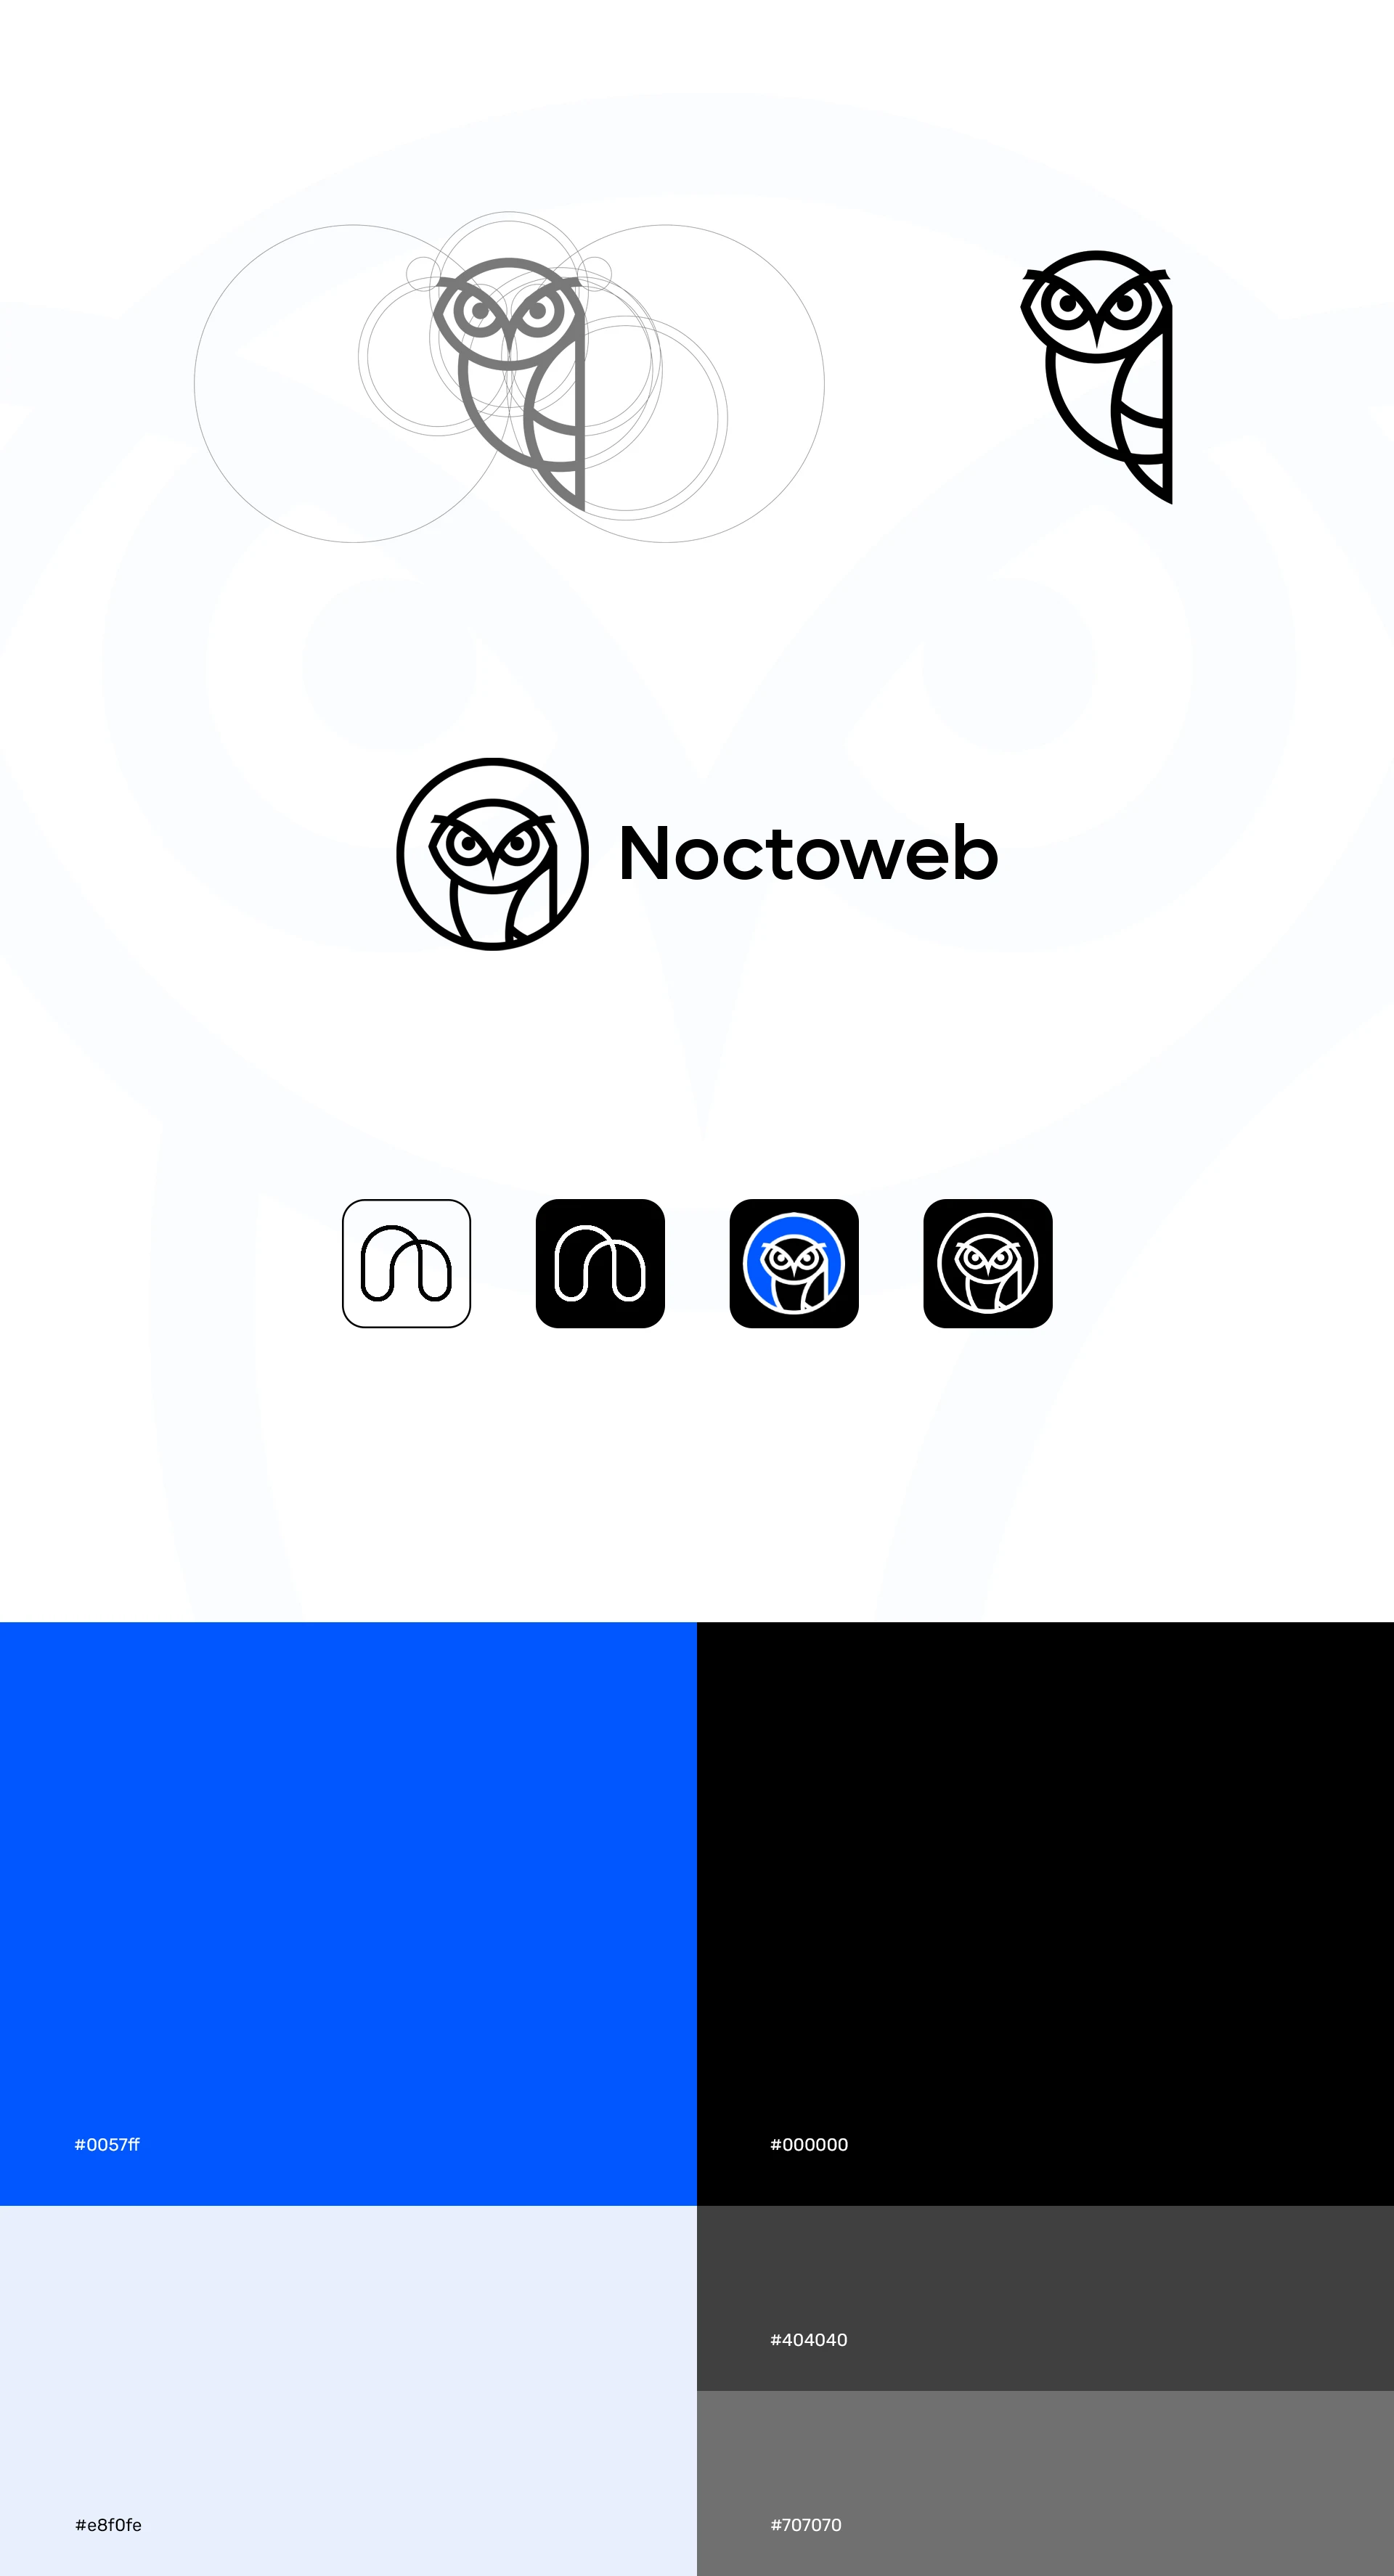 About Noctoweb.com